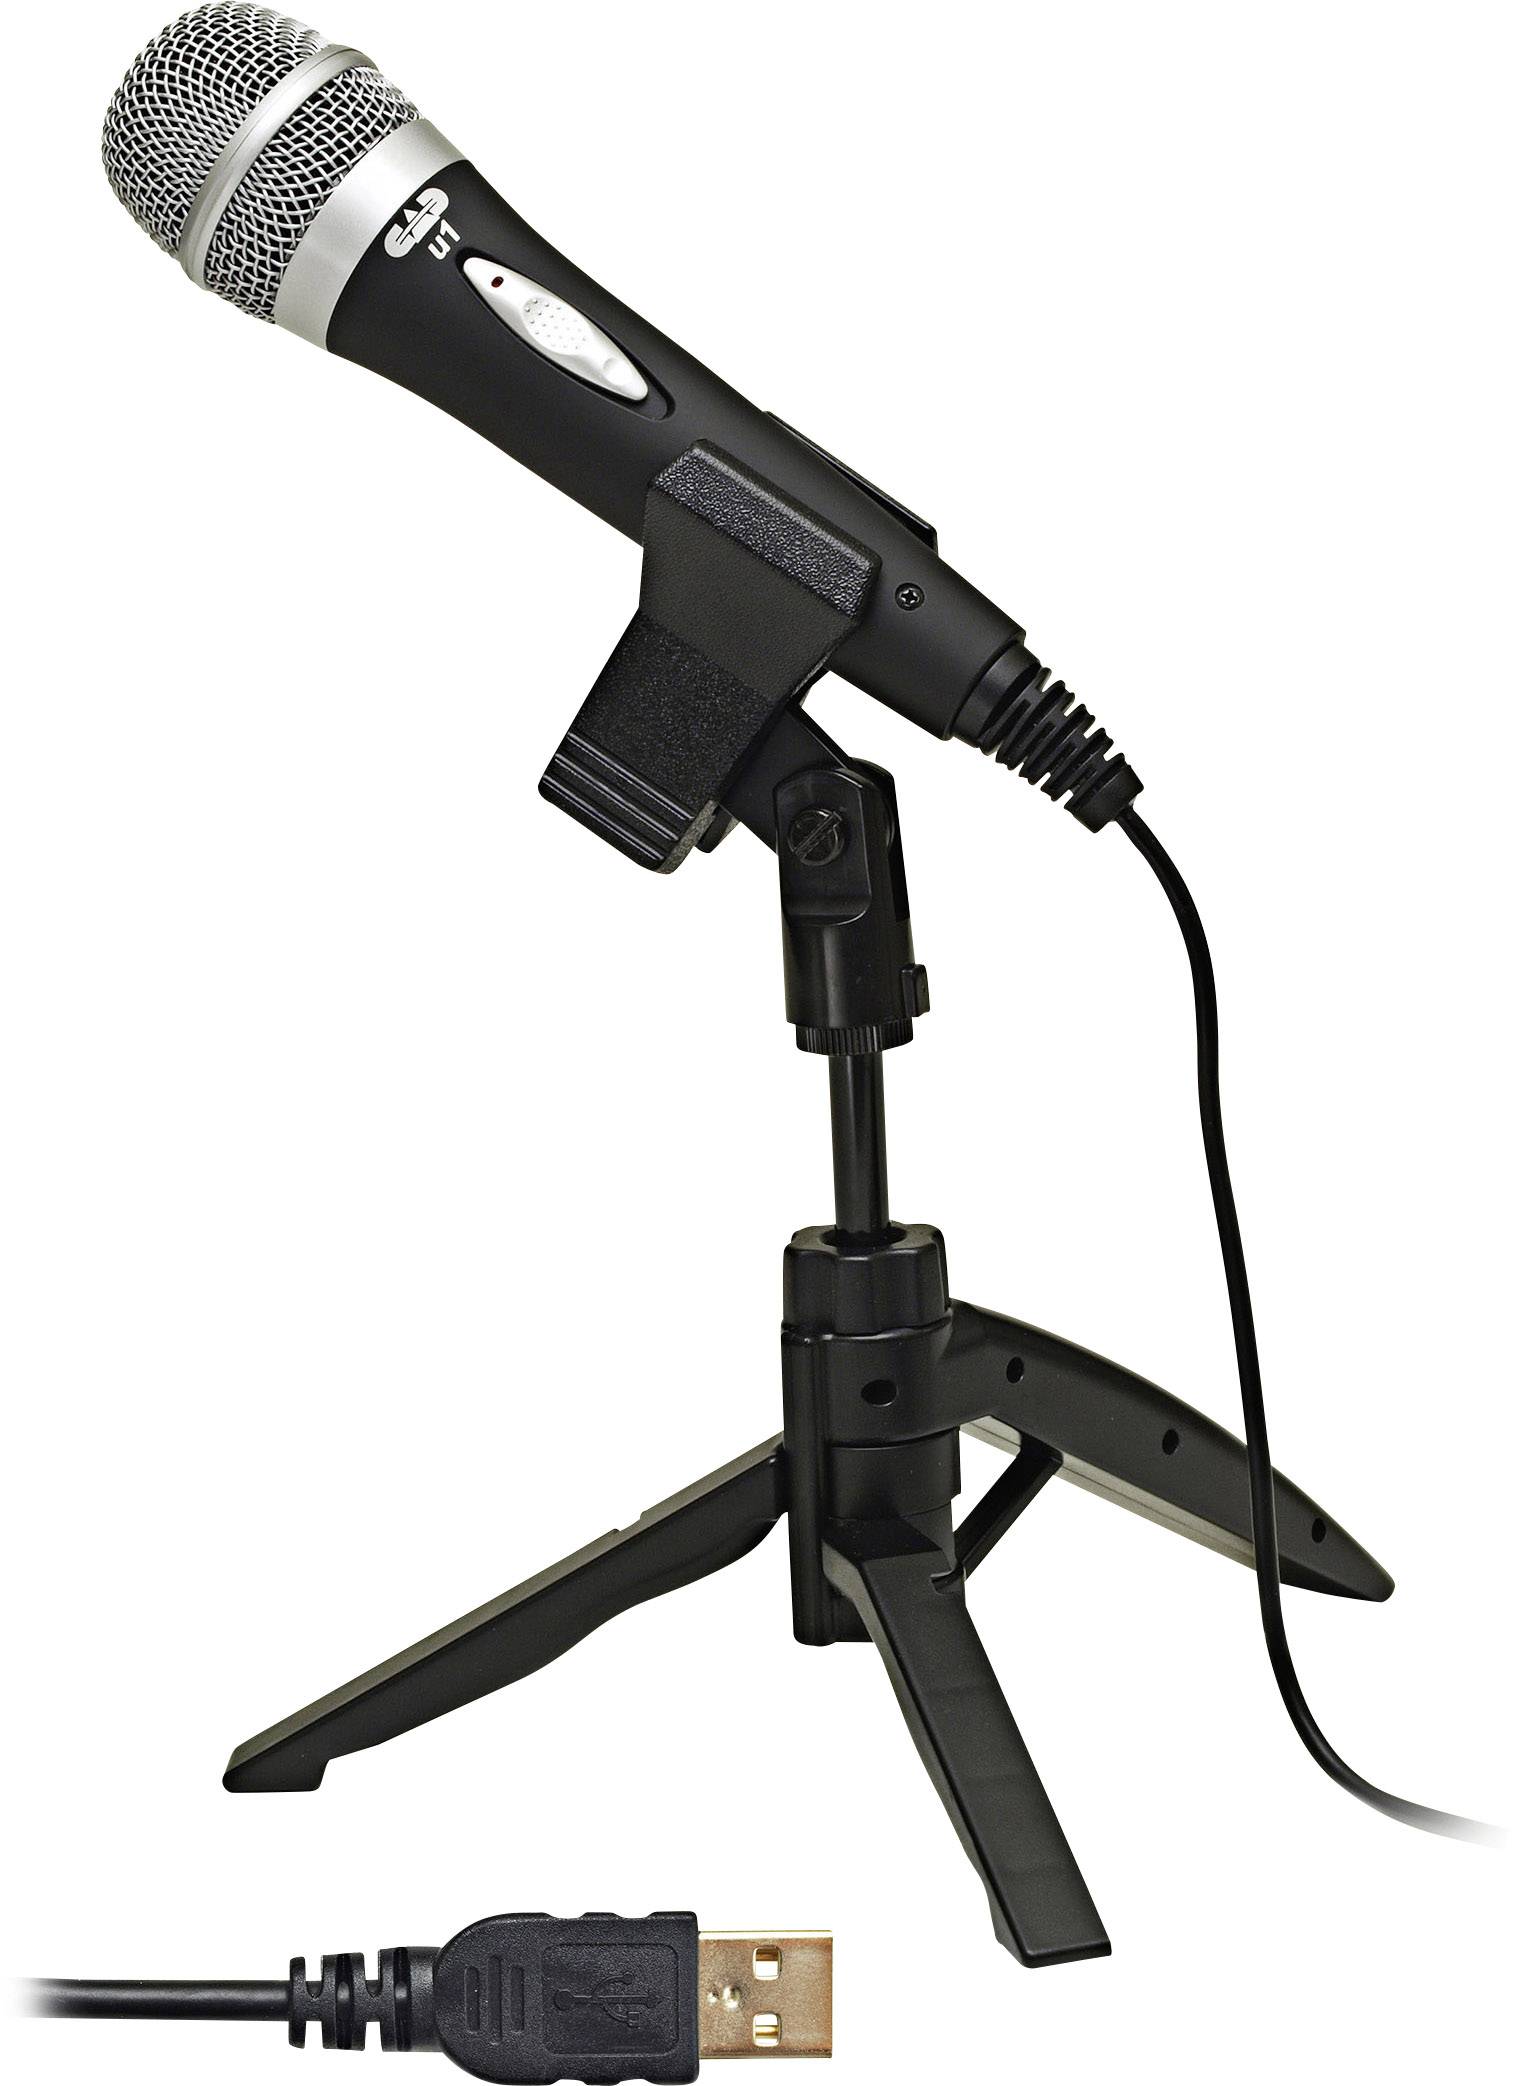 U1 USB USB microphone Corded incl. incl. cable, | Conrad.com